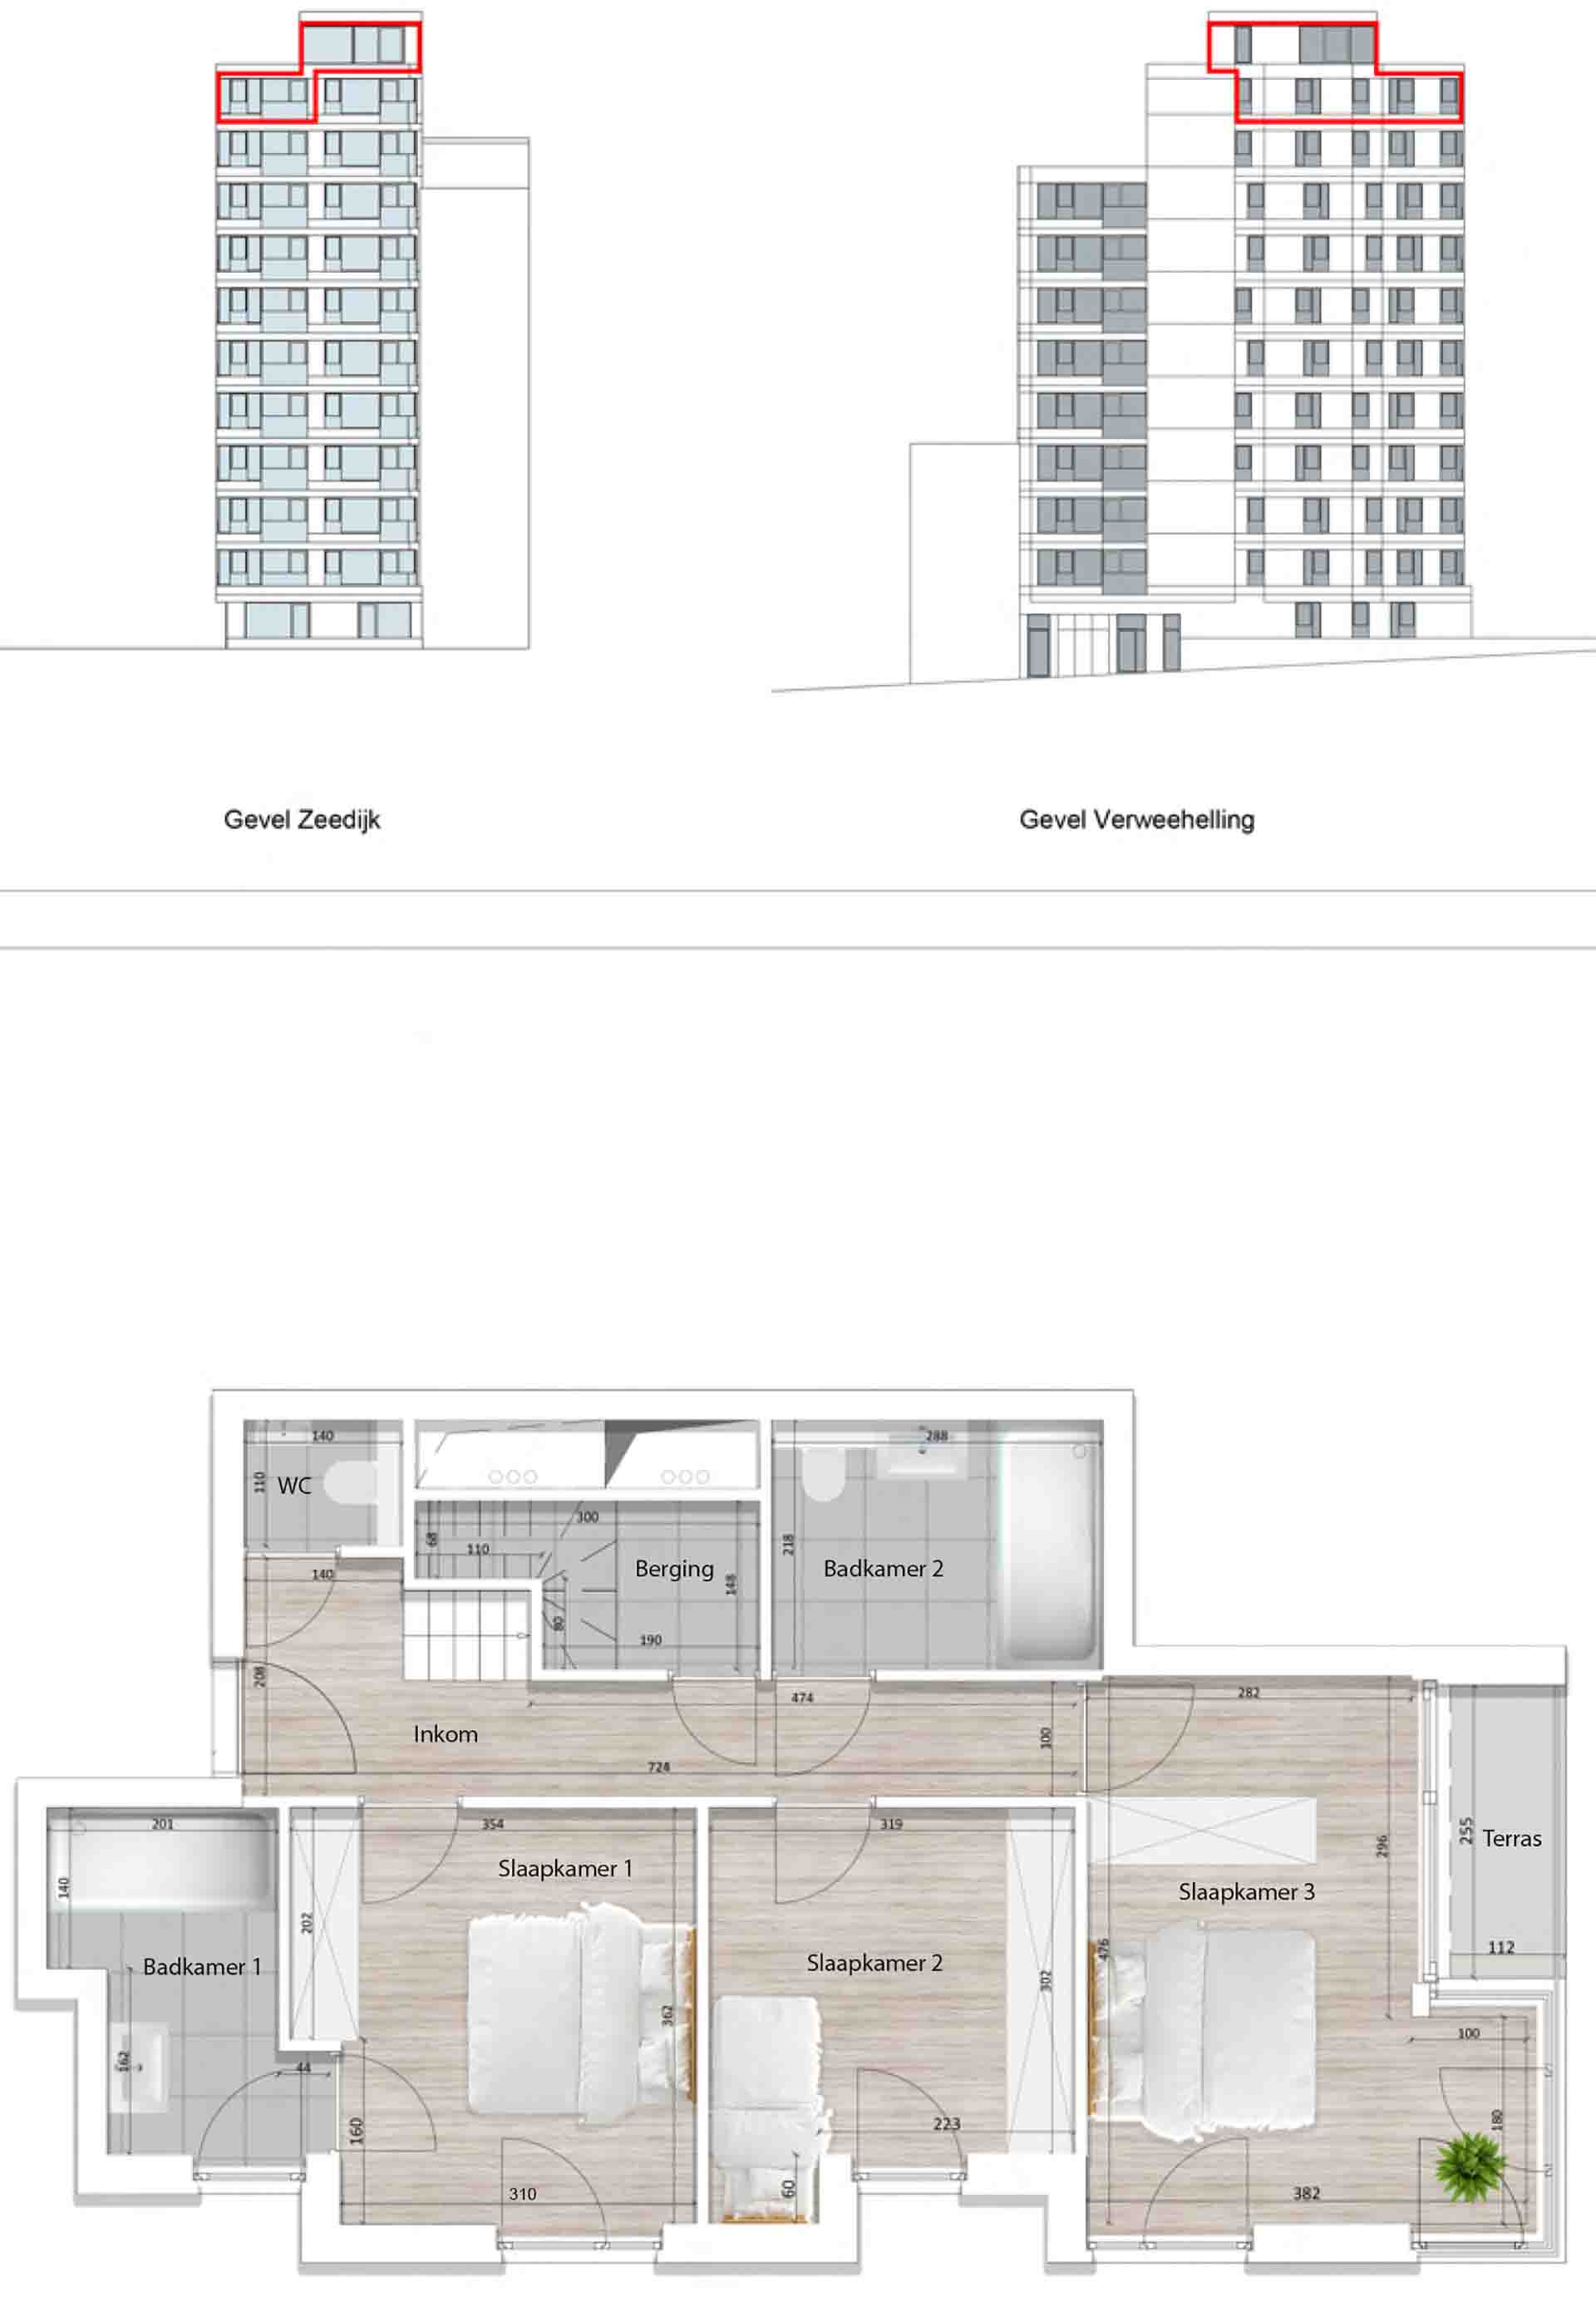 Residentie <br/> Pier - image appartement-te-koop-blankenberge-residentie-pier-plan-1001-variant-2-beneden on https://hoprom.be